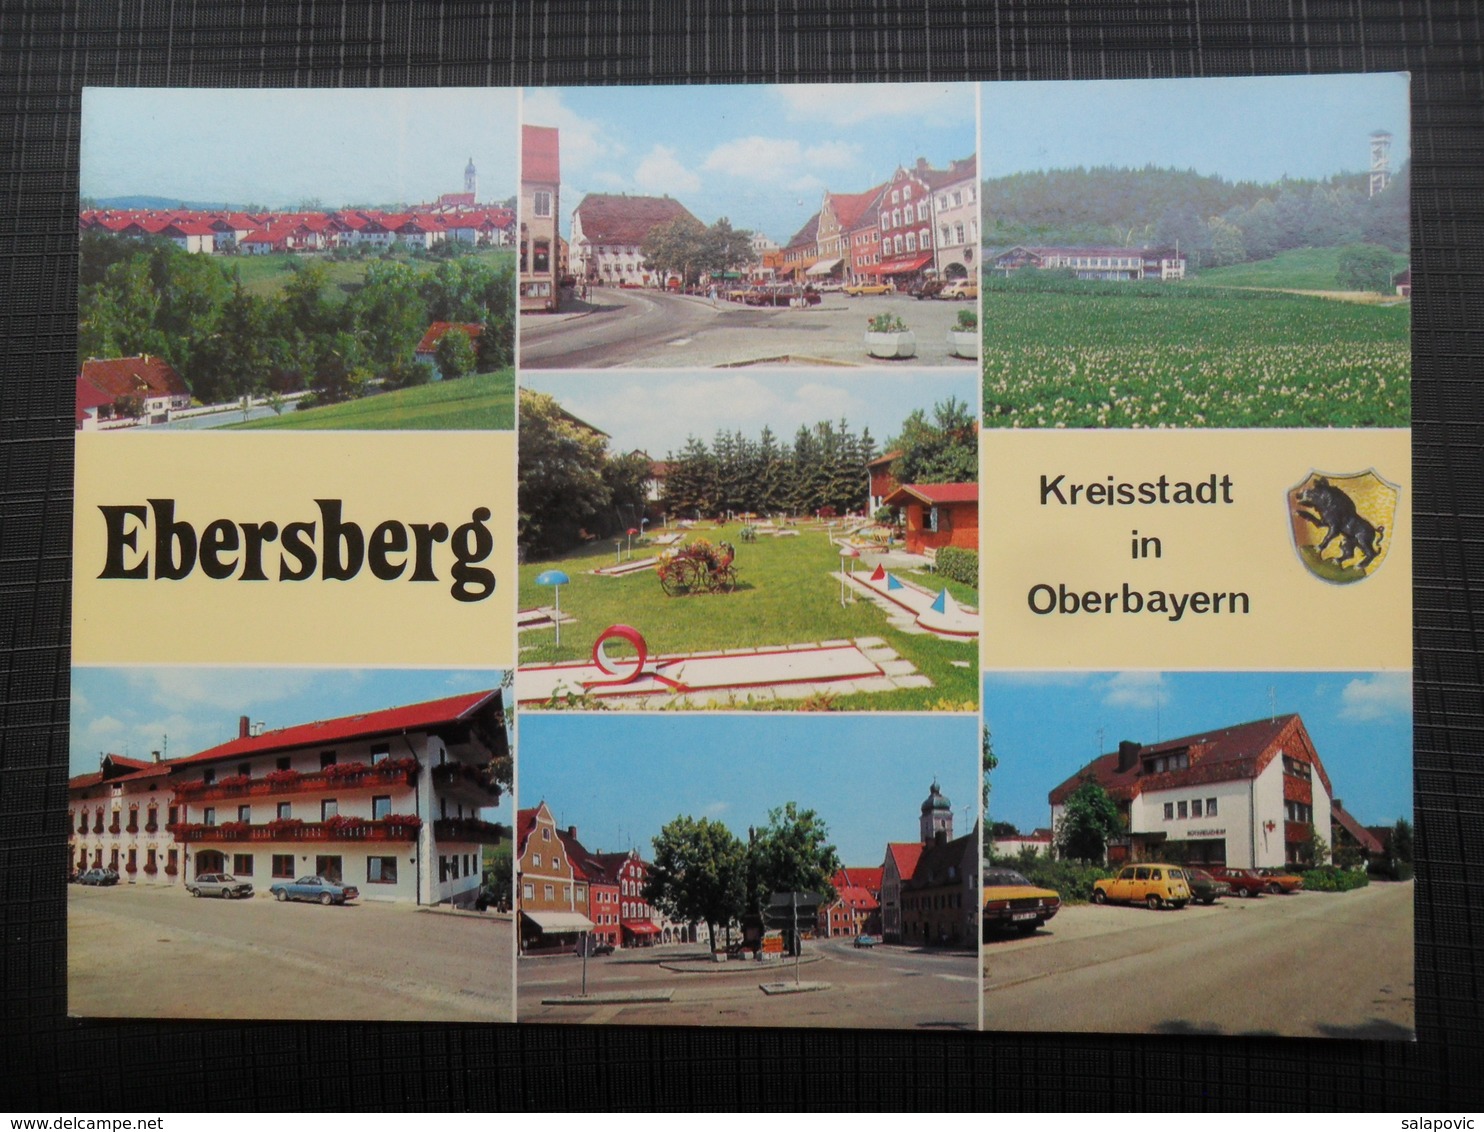 Ebersberg, Oberbayern Kreisstadt - Ebersberg